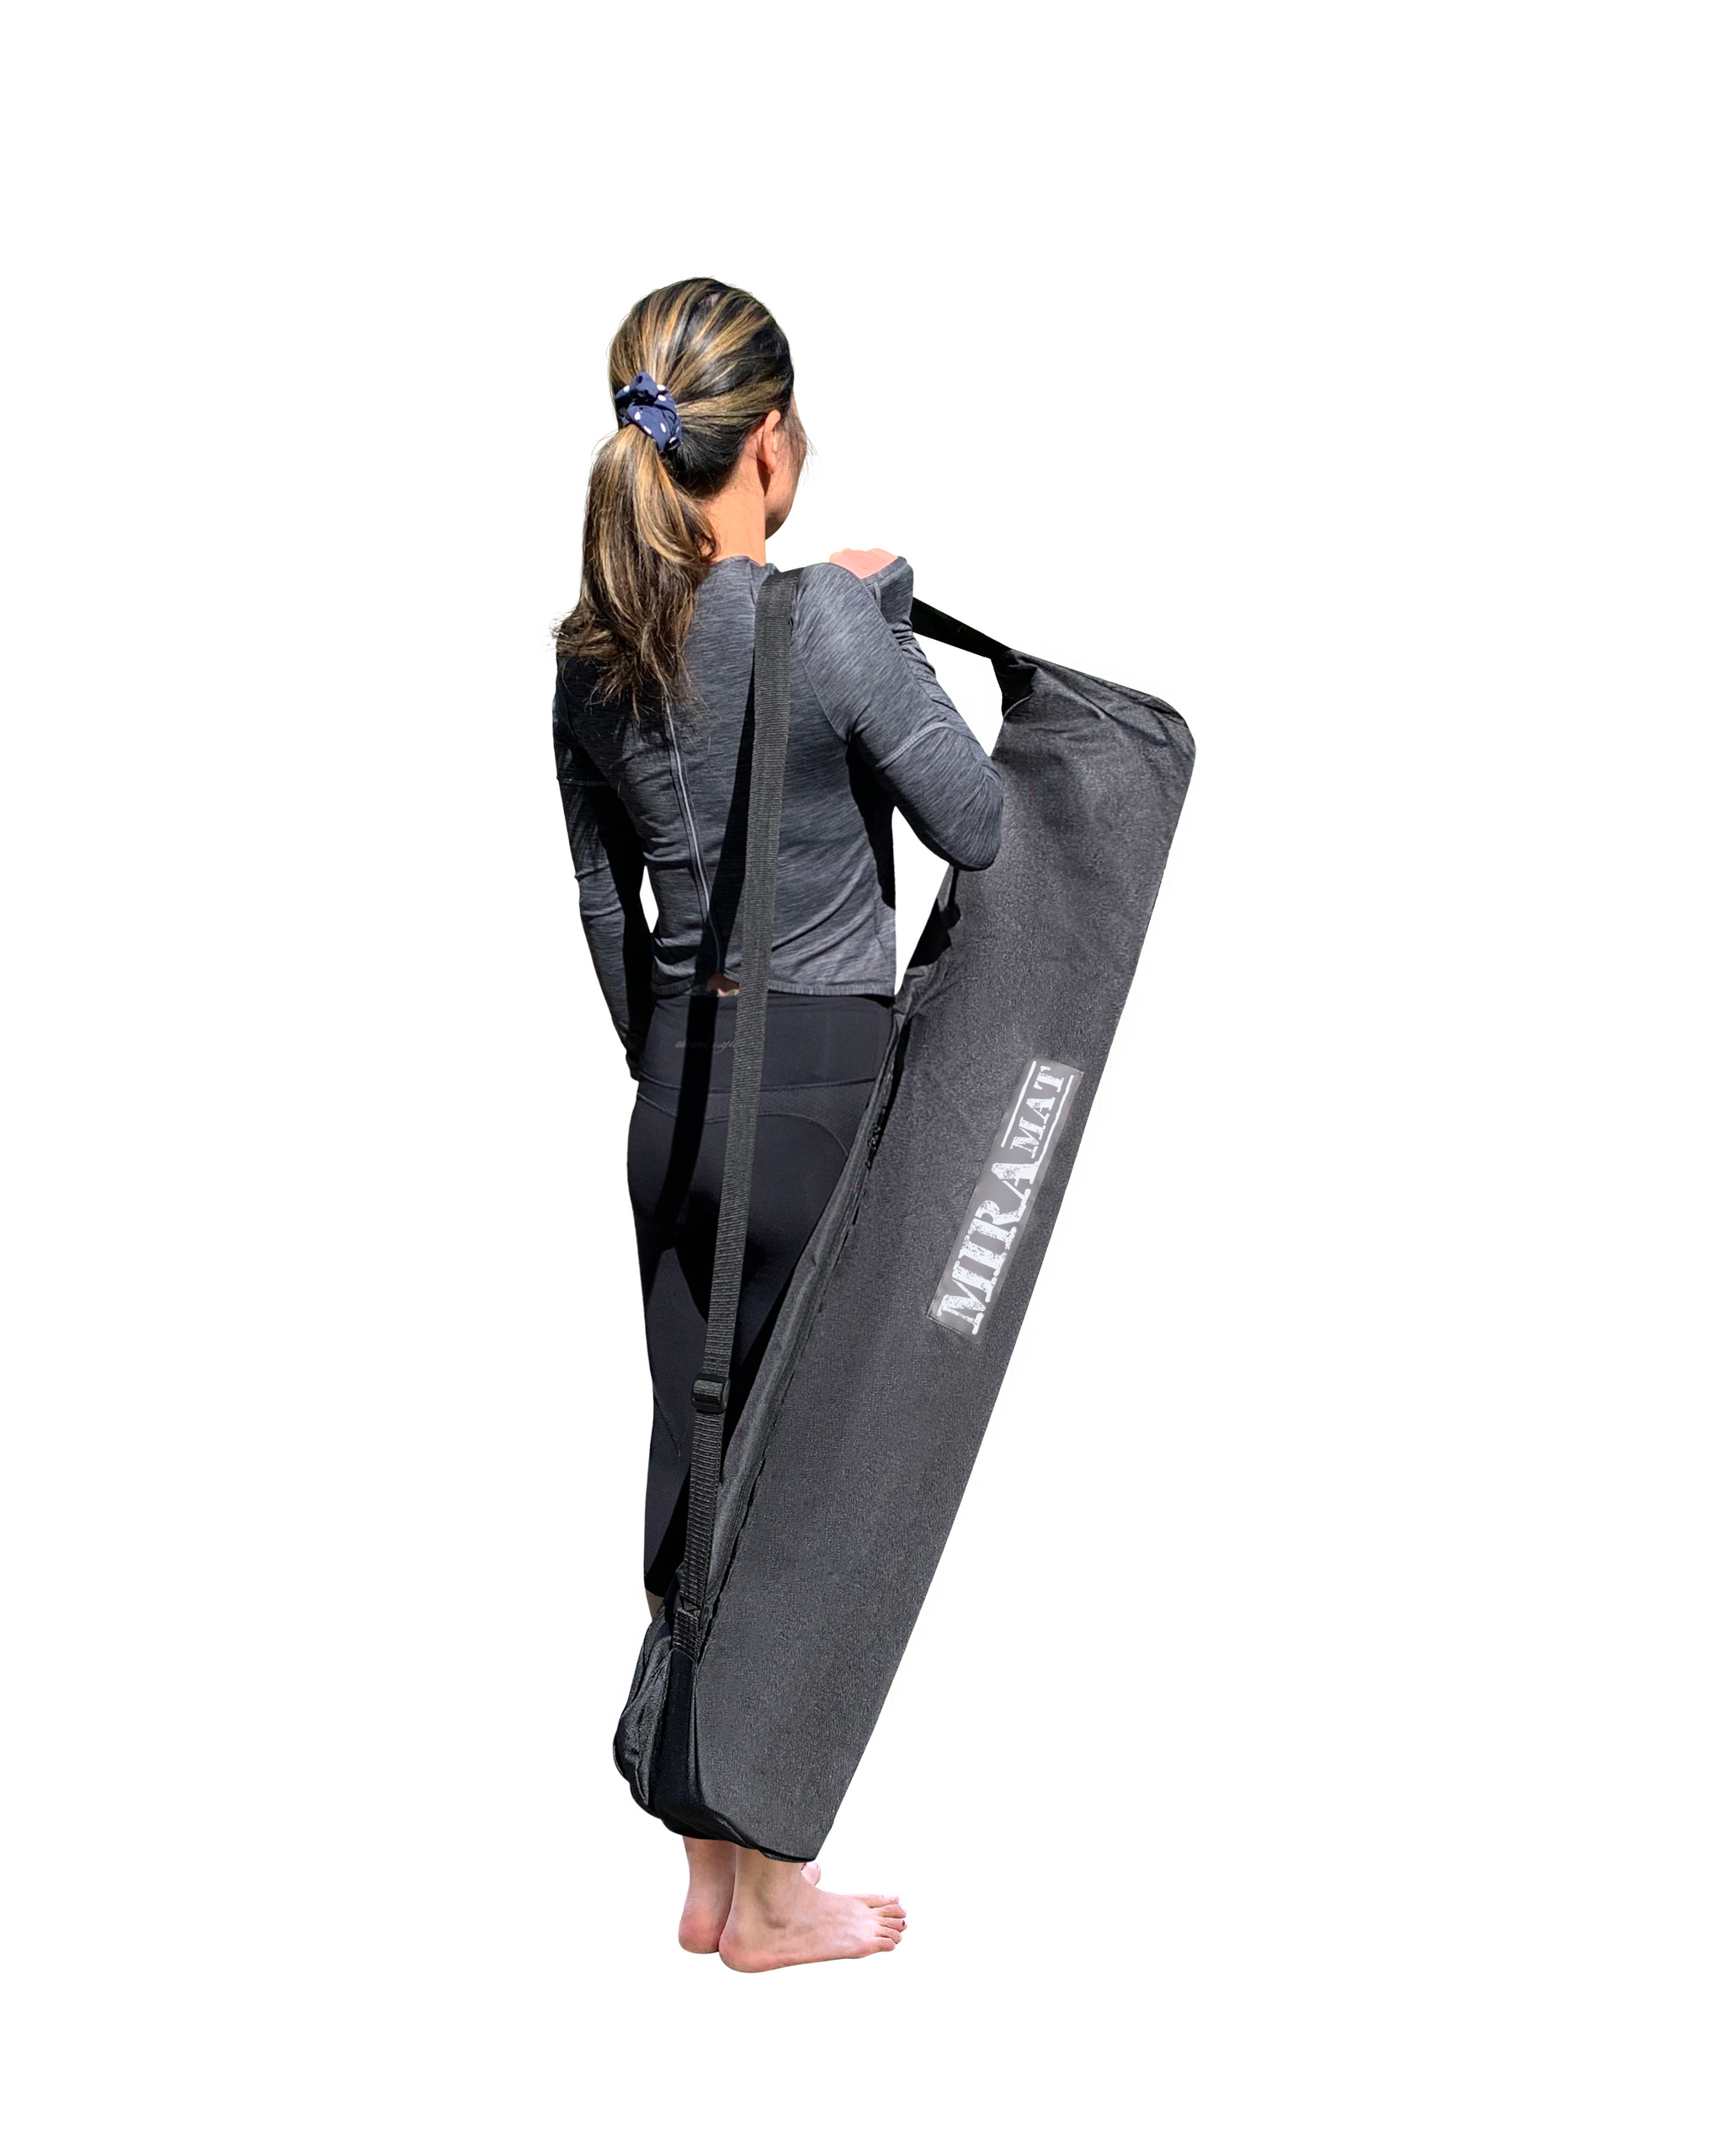 Miramat® Yoga - 214cm x 122cm - Extra Large Yoga Mat With Carry Bag - -  Miramat Store UK